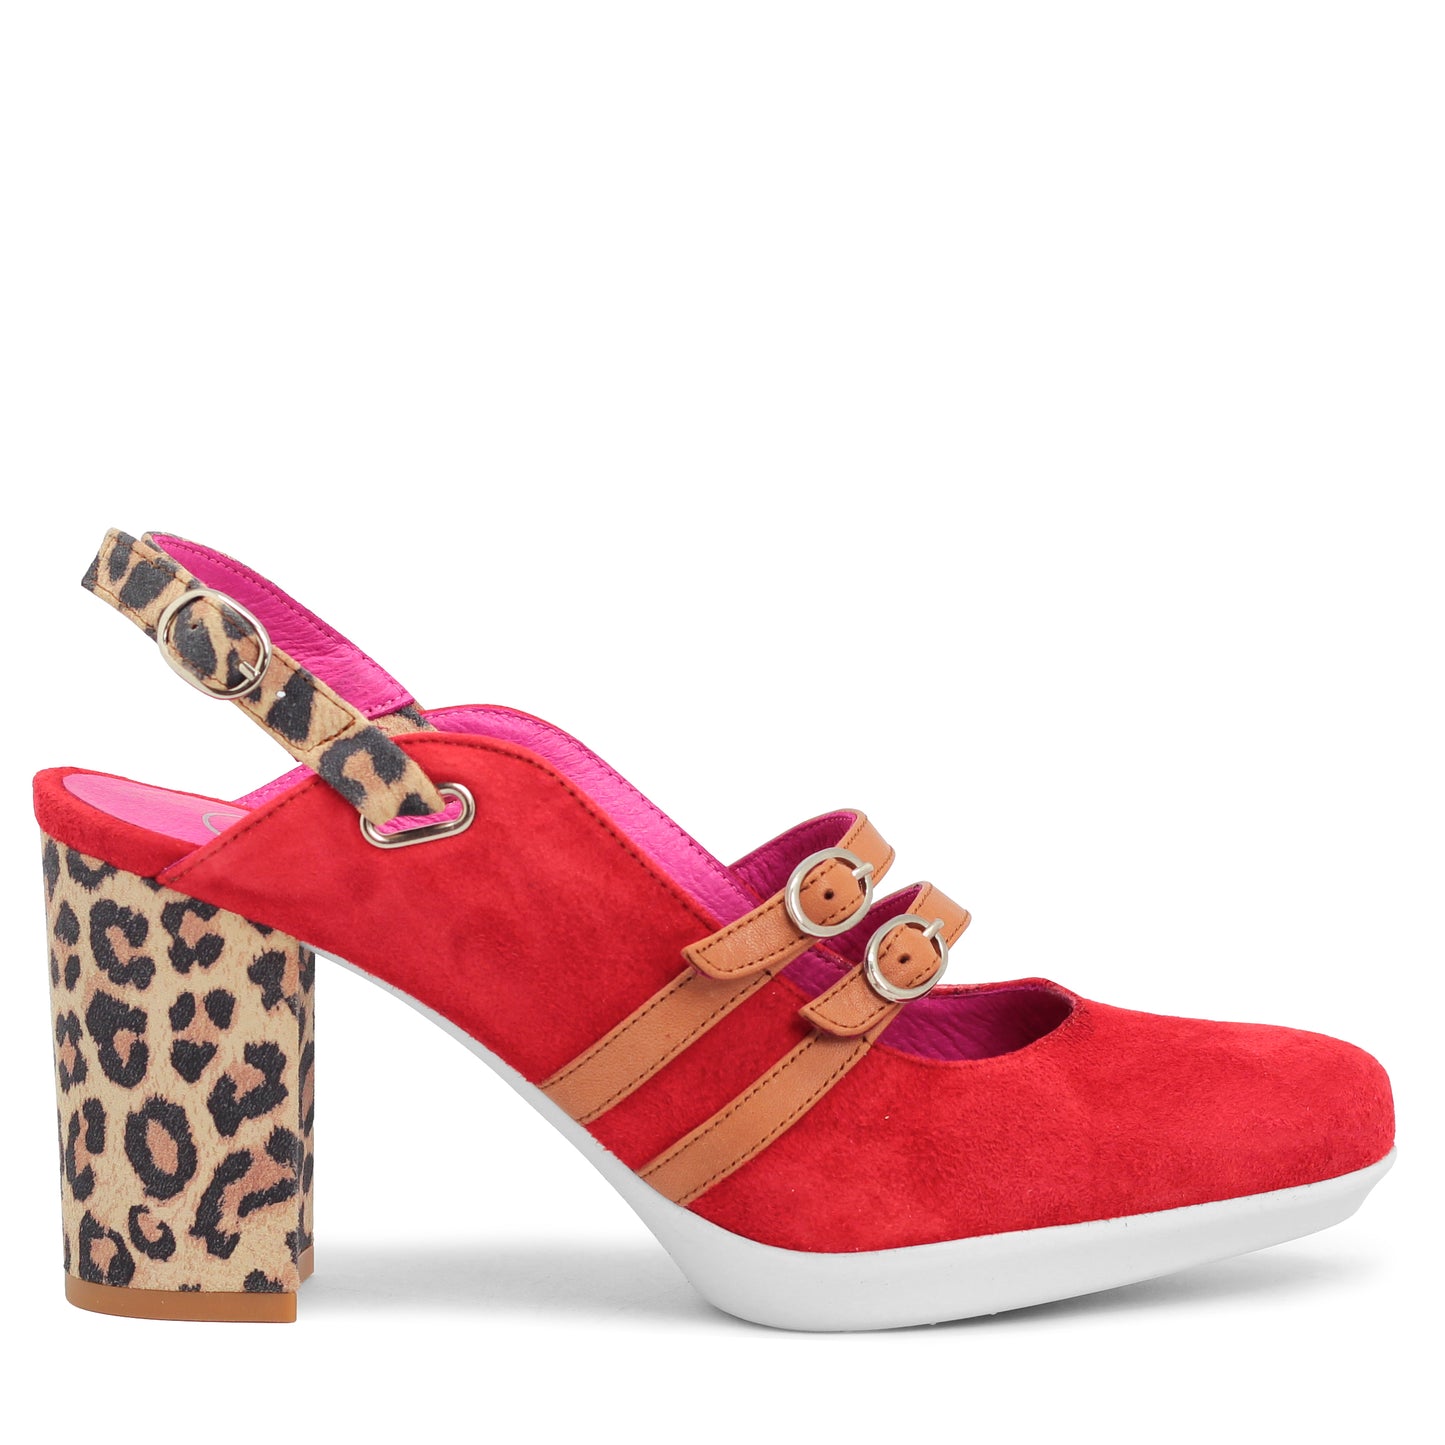 Pineapple - Orange-Red Leopard shoe